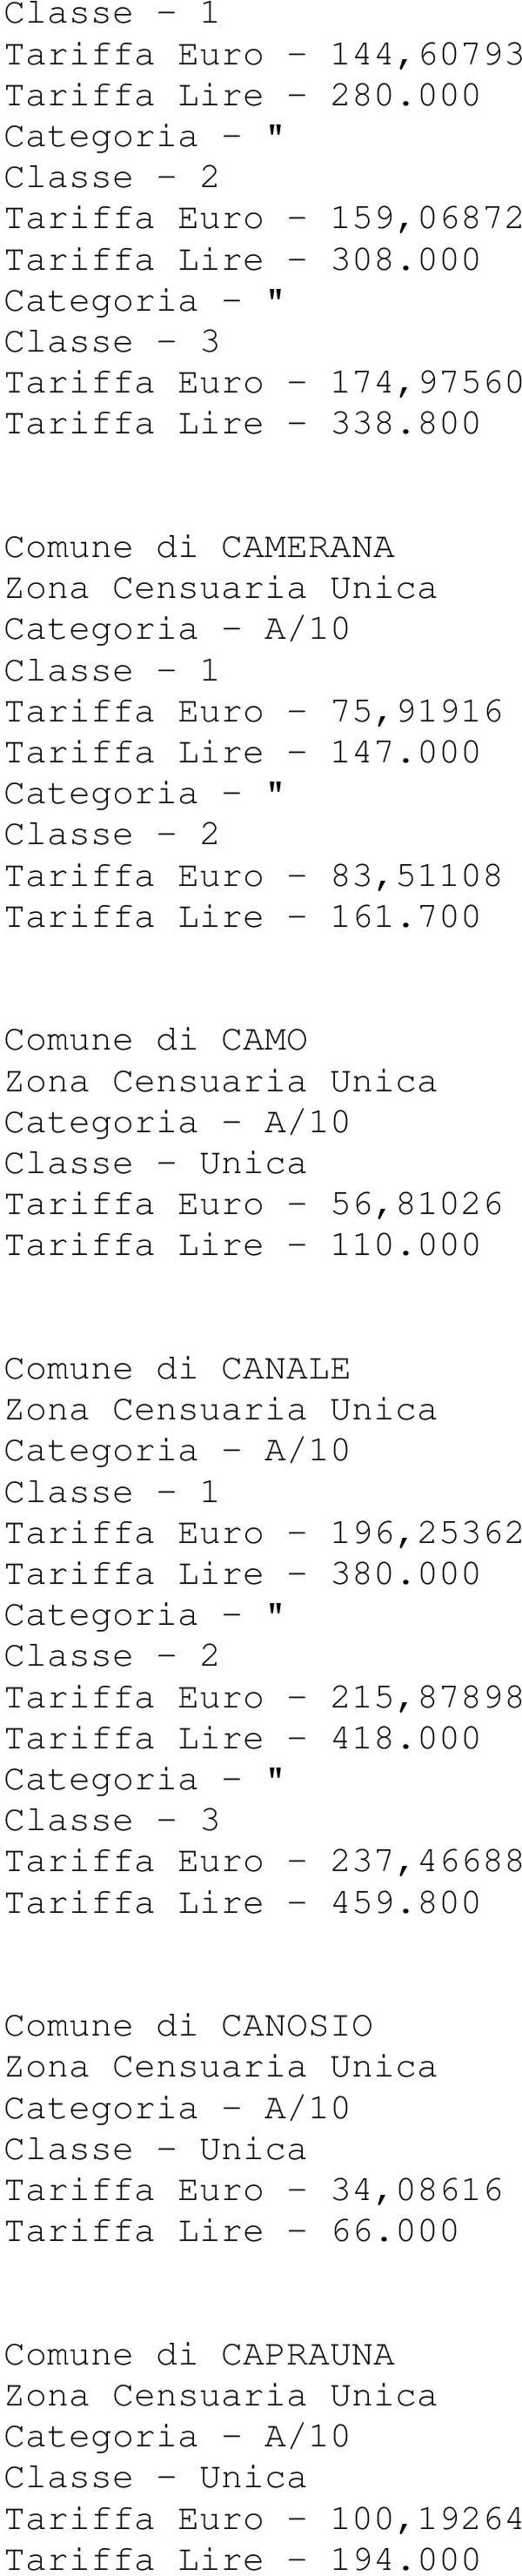 700 Comune di CAMO Tariffa Euro - 56,81026 Tariffa Lire - 110.000 Comune di CANALE Tariffa Euro - 196,25362 Tariffa Lire - 380.